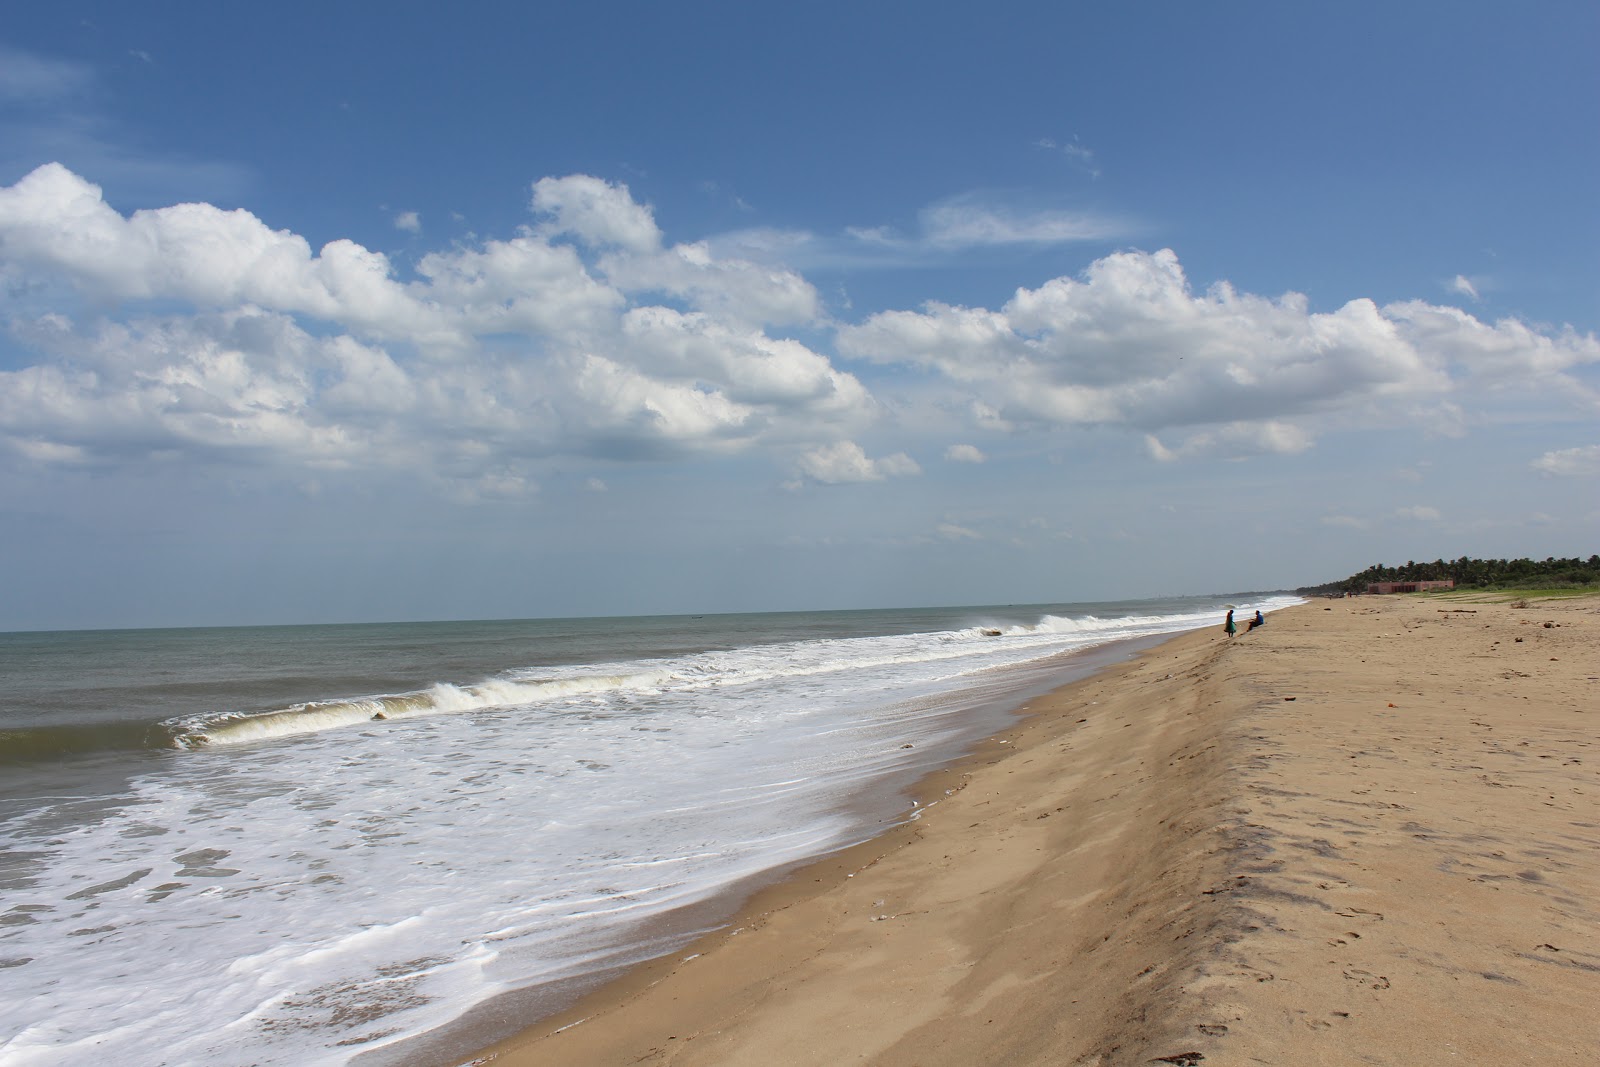 Fotografie cu Pondicherry University Beach cu o suprafață de apa pură turcoaz